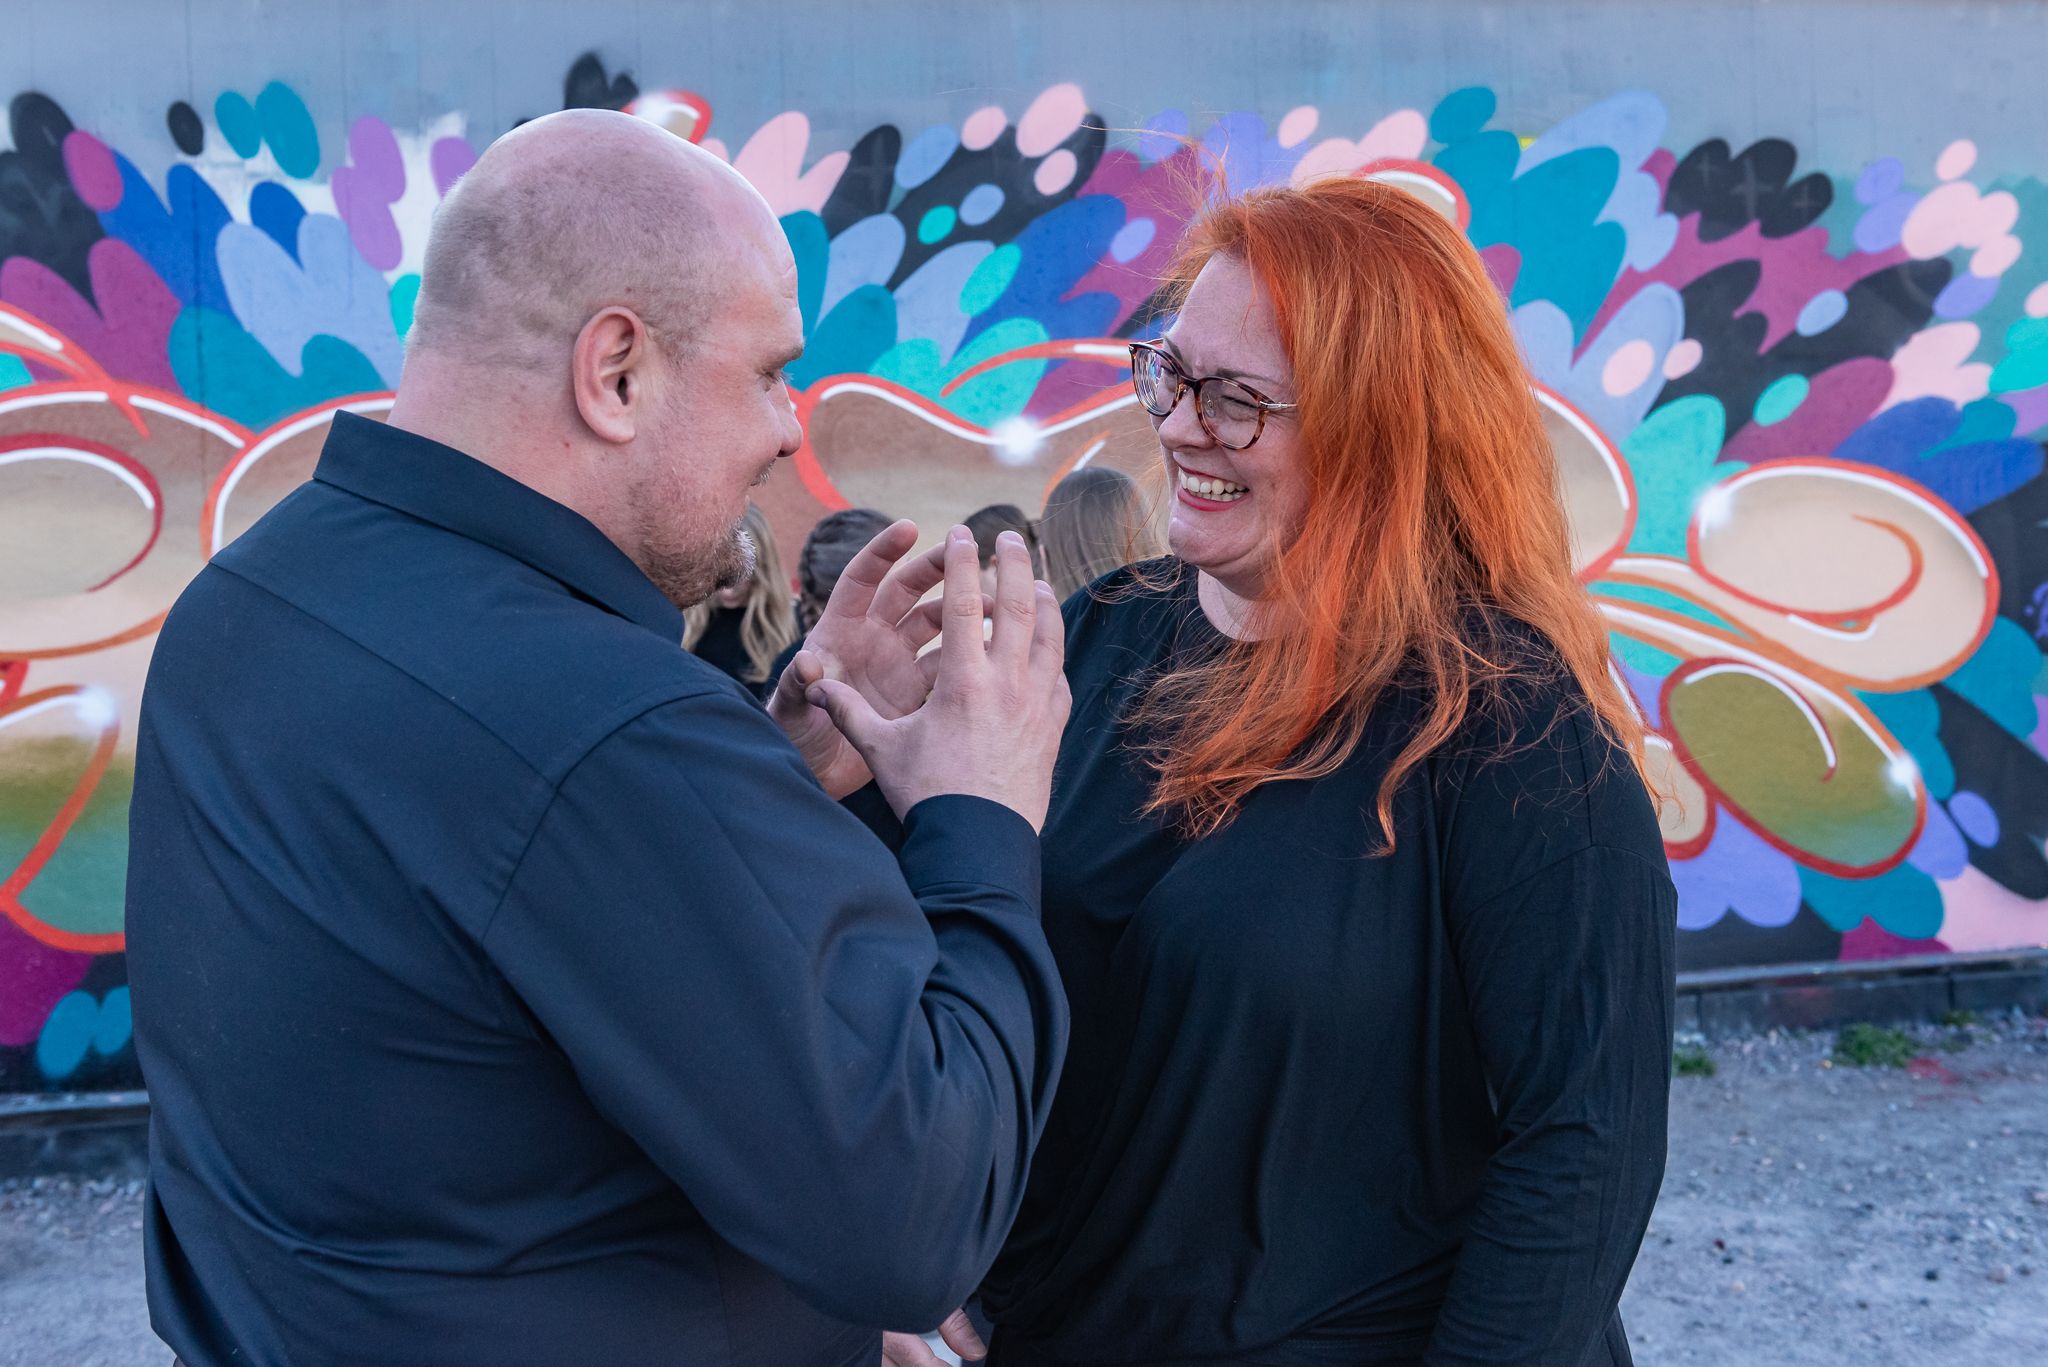 Mies ja hymyilevä, punatukkainen nainen keskustelevat graffitiseinän edessä